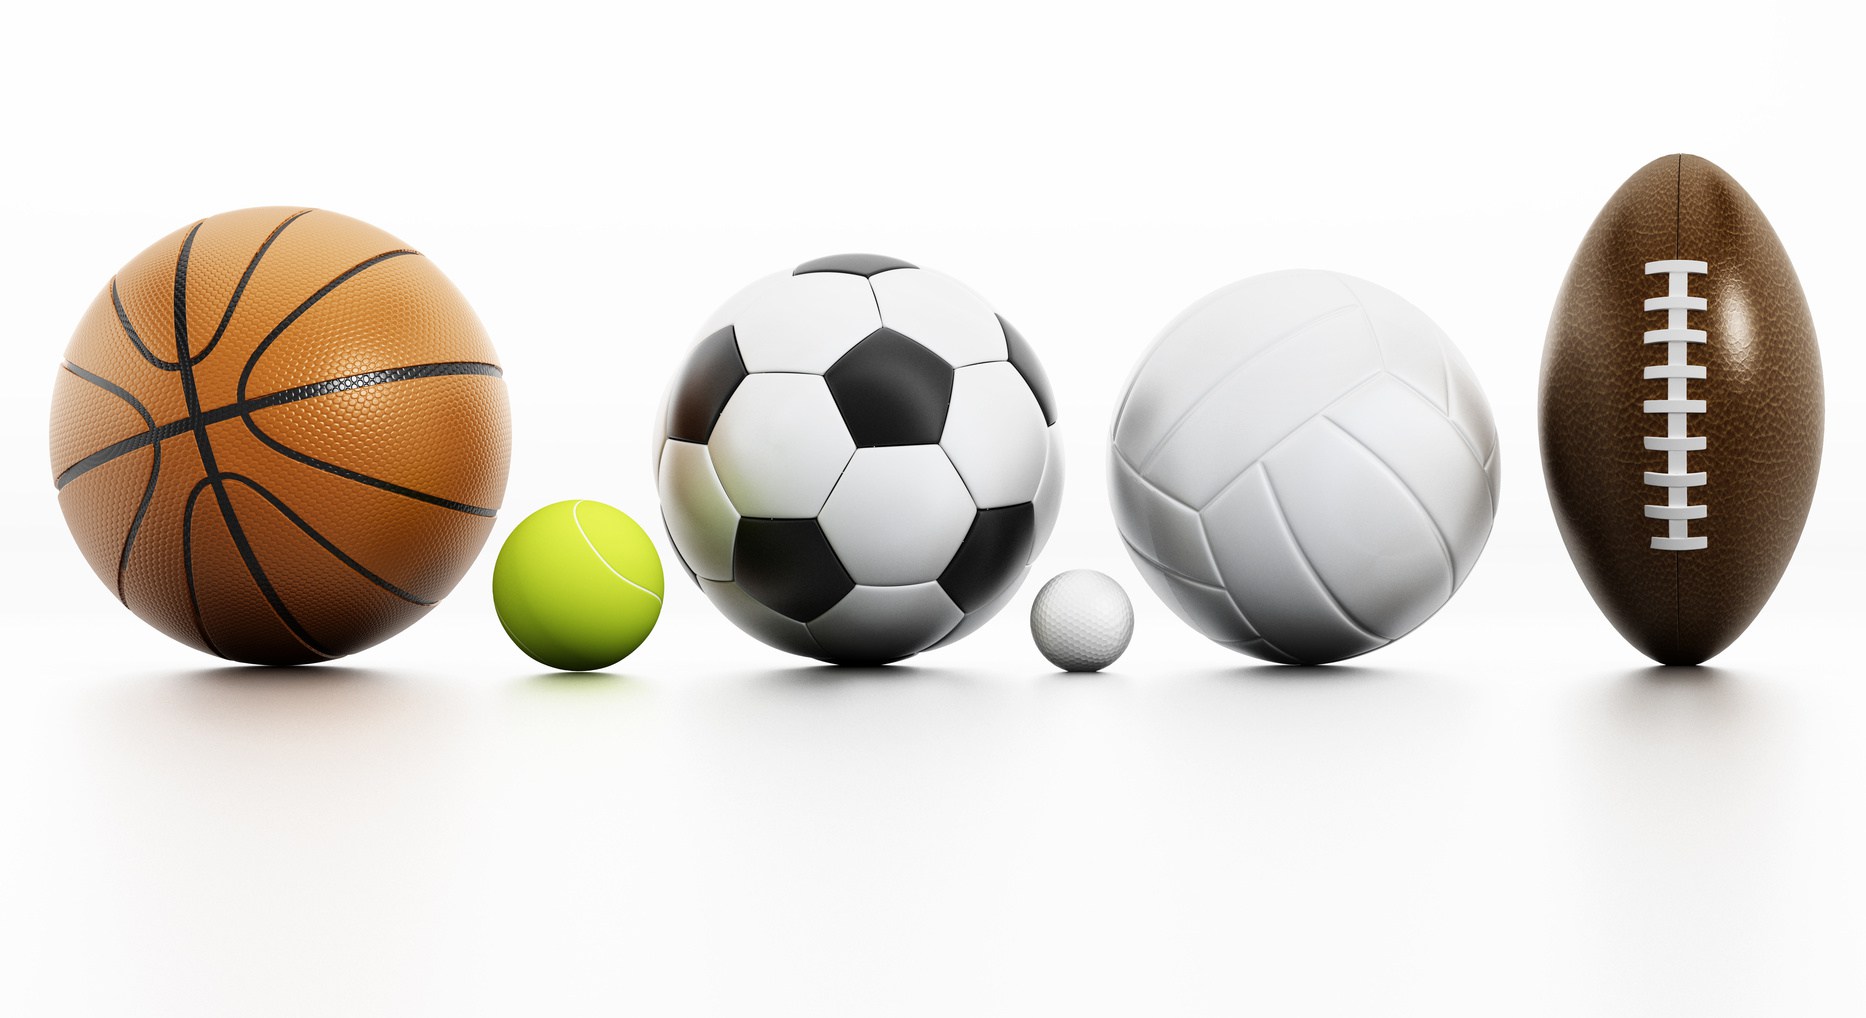 Air football, jeux exterieurs et sports